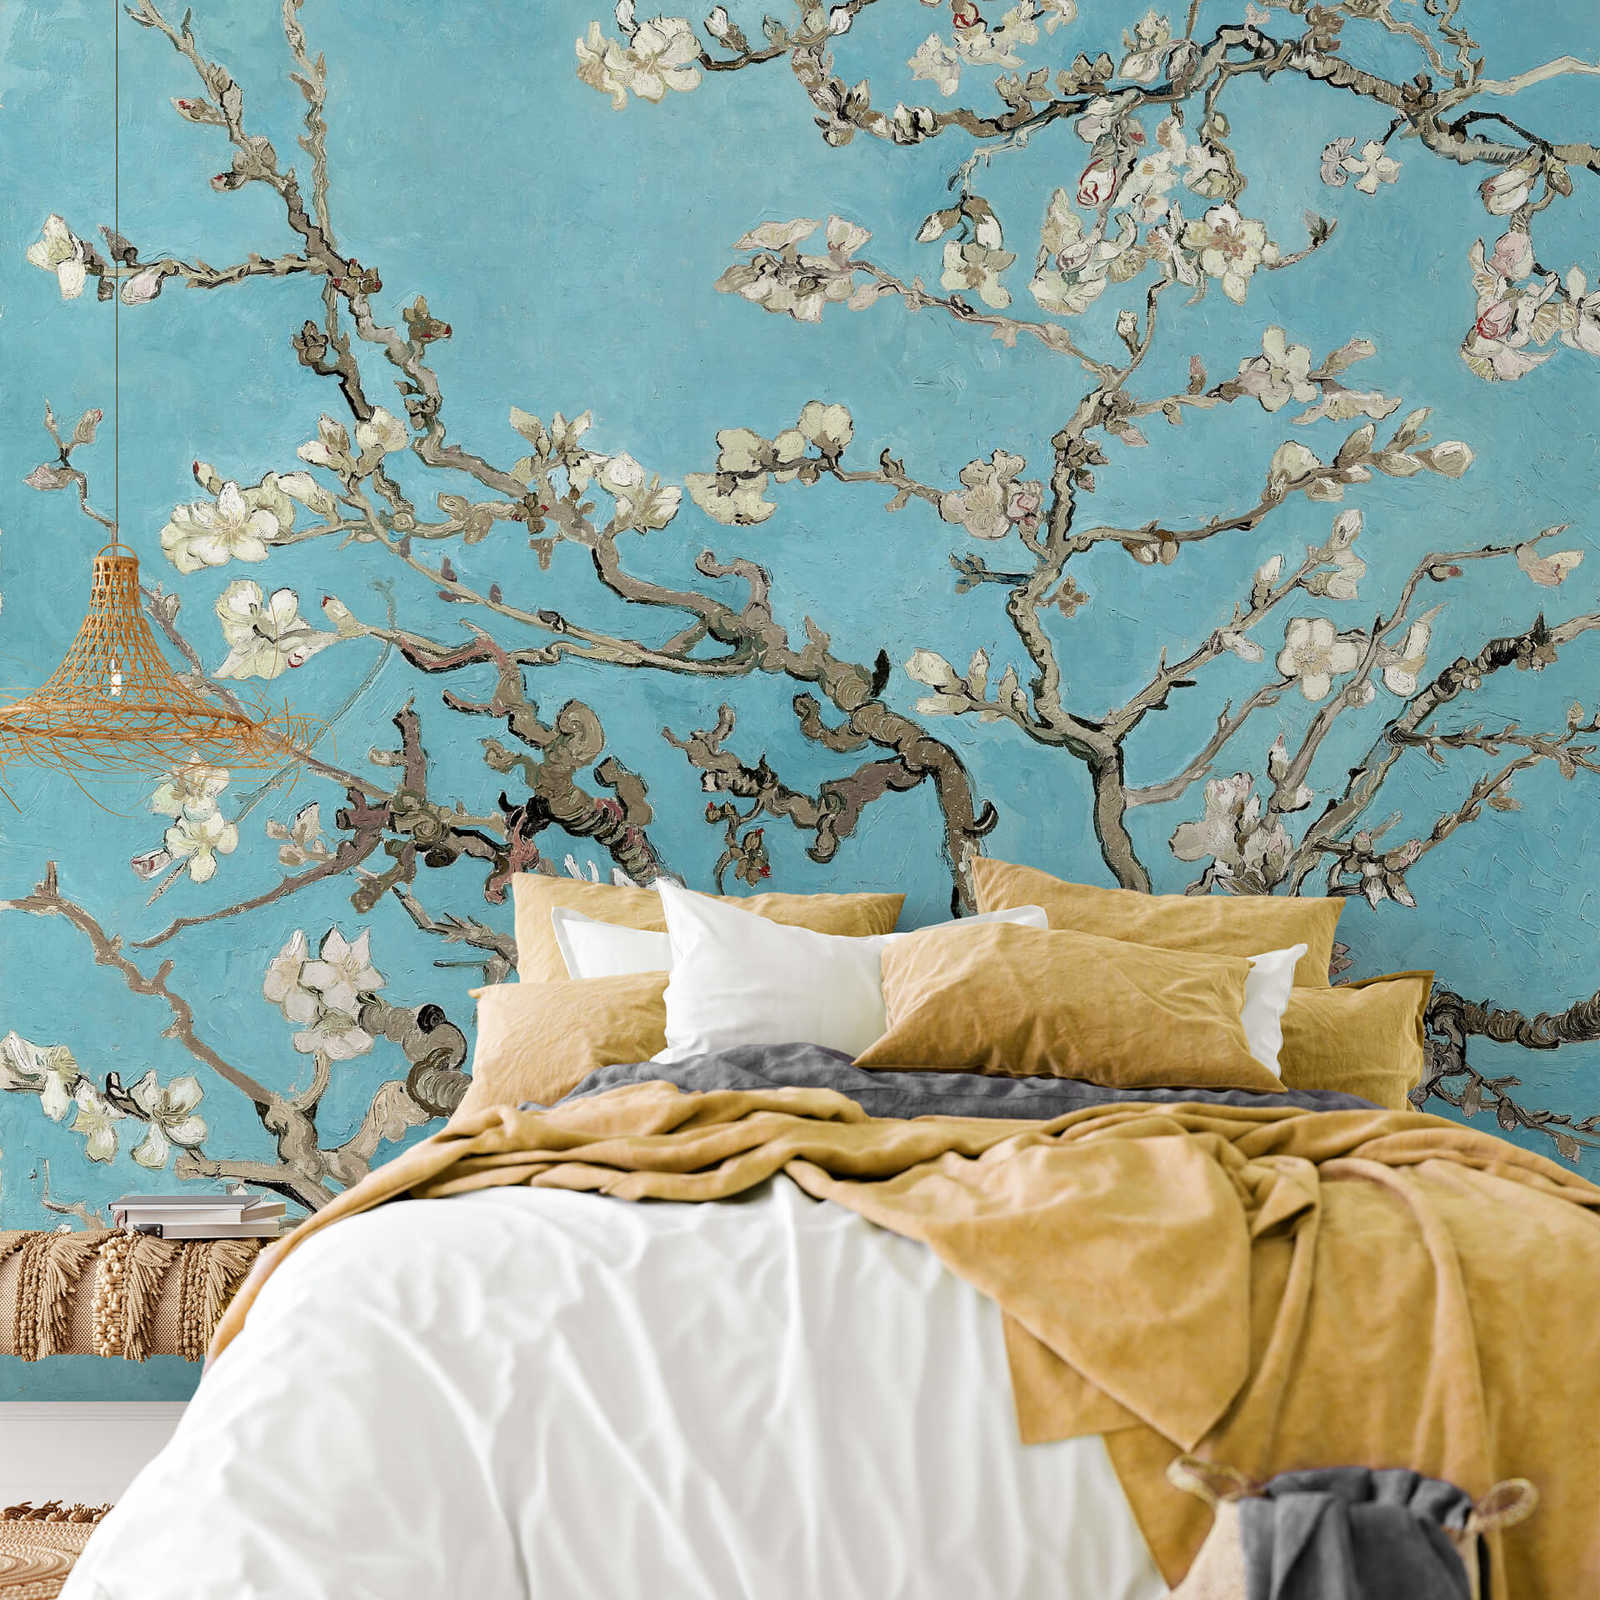             Papier peint panoramique Fleurs d'amandier - bleu, marron, blanc
        